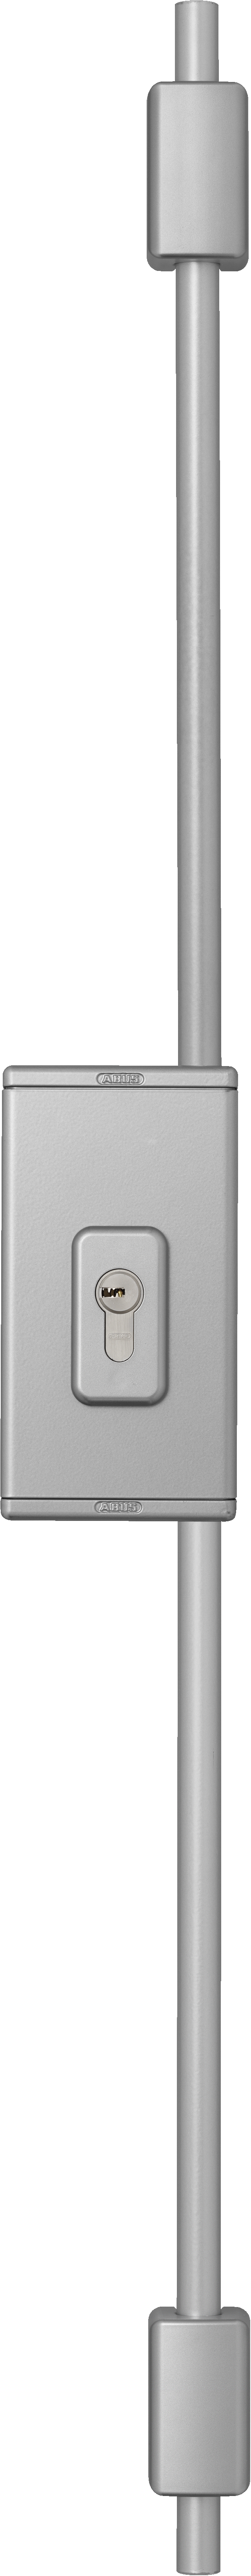 Multi-point door lock TSS550 S m. EC550